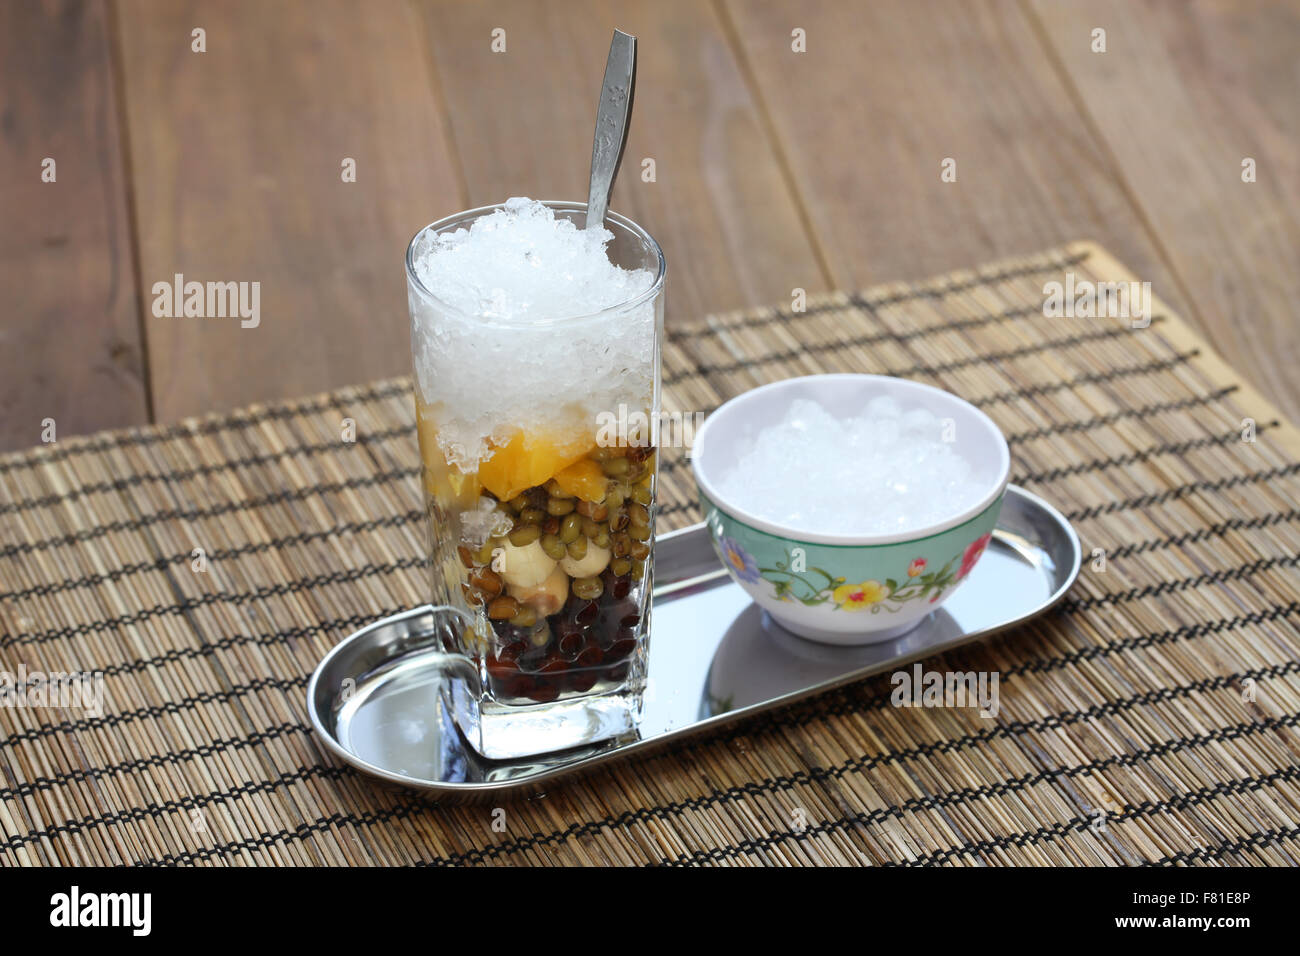 Che es una sopa dulce postre vietnamita, normalmente servido en un vaso con hielo y se come con una cuchara. Foto de stock